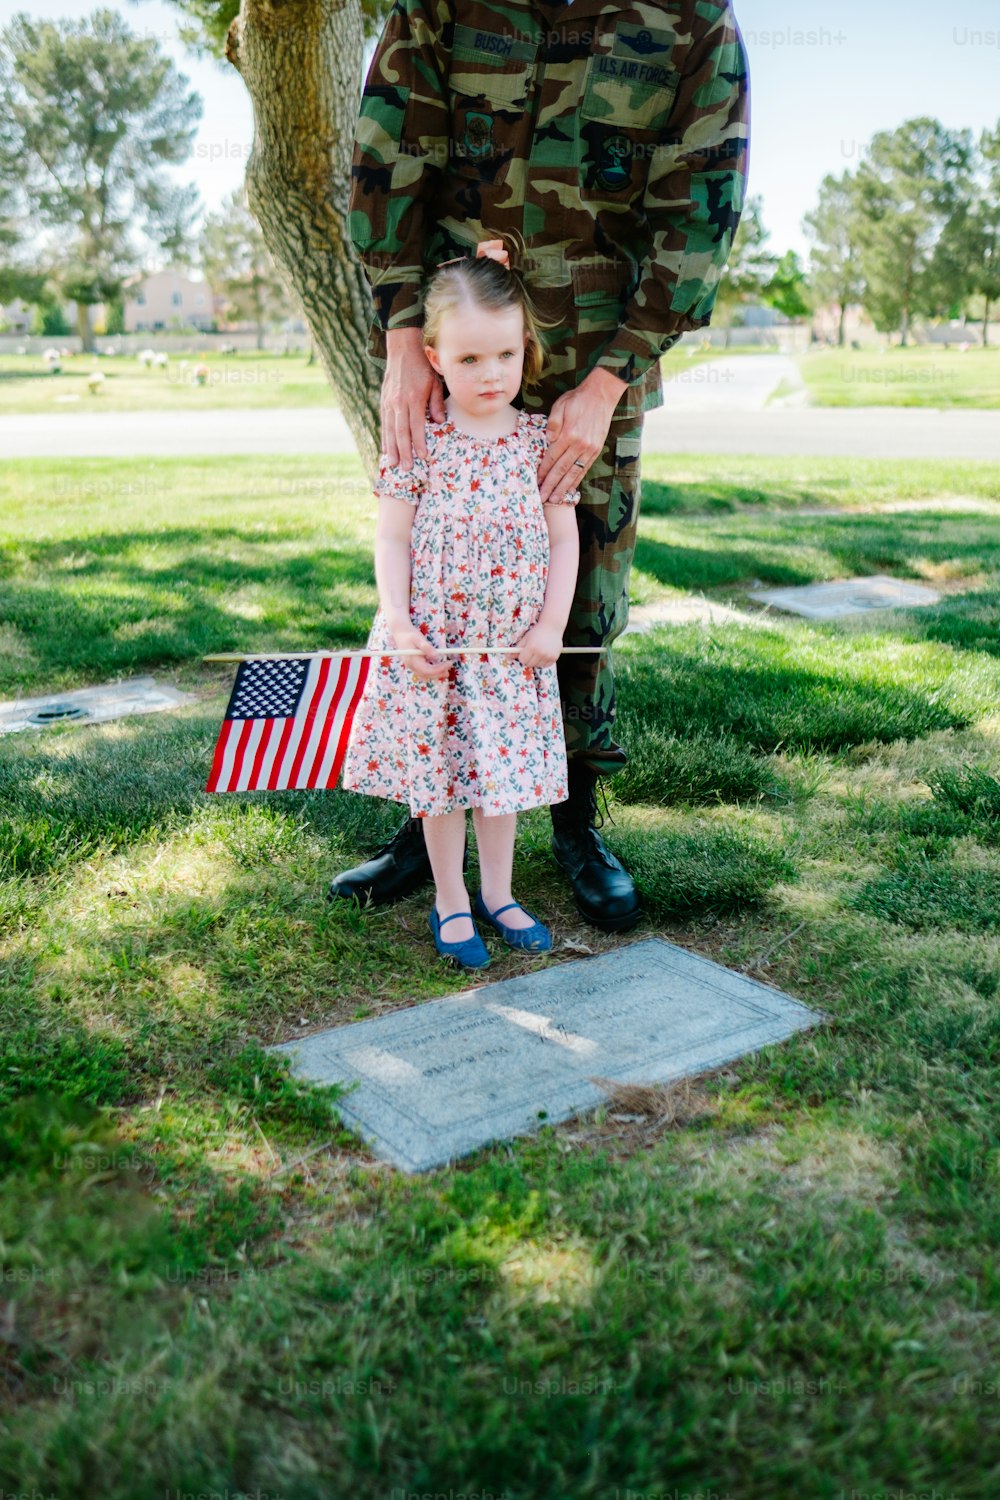 アメリカの国旗を持つ兵士の隣に立っている少女